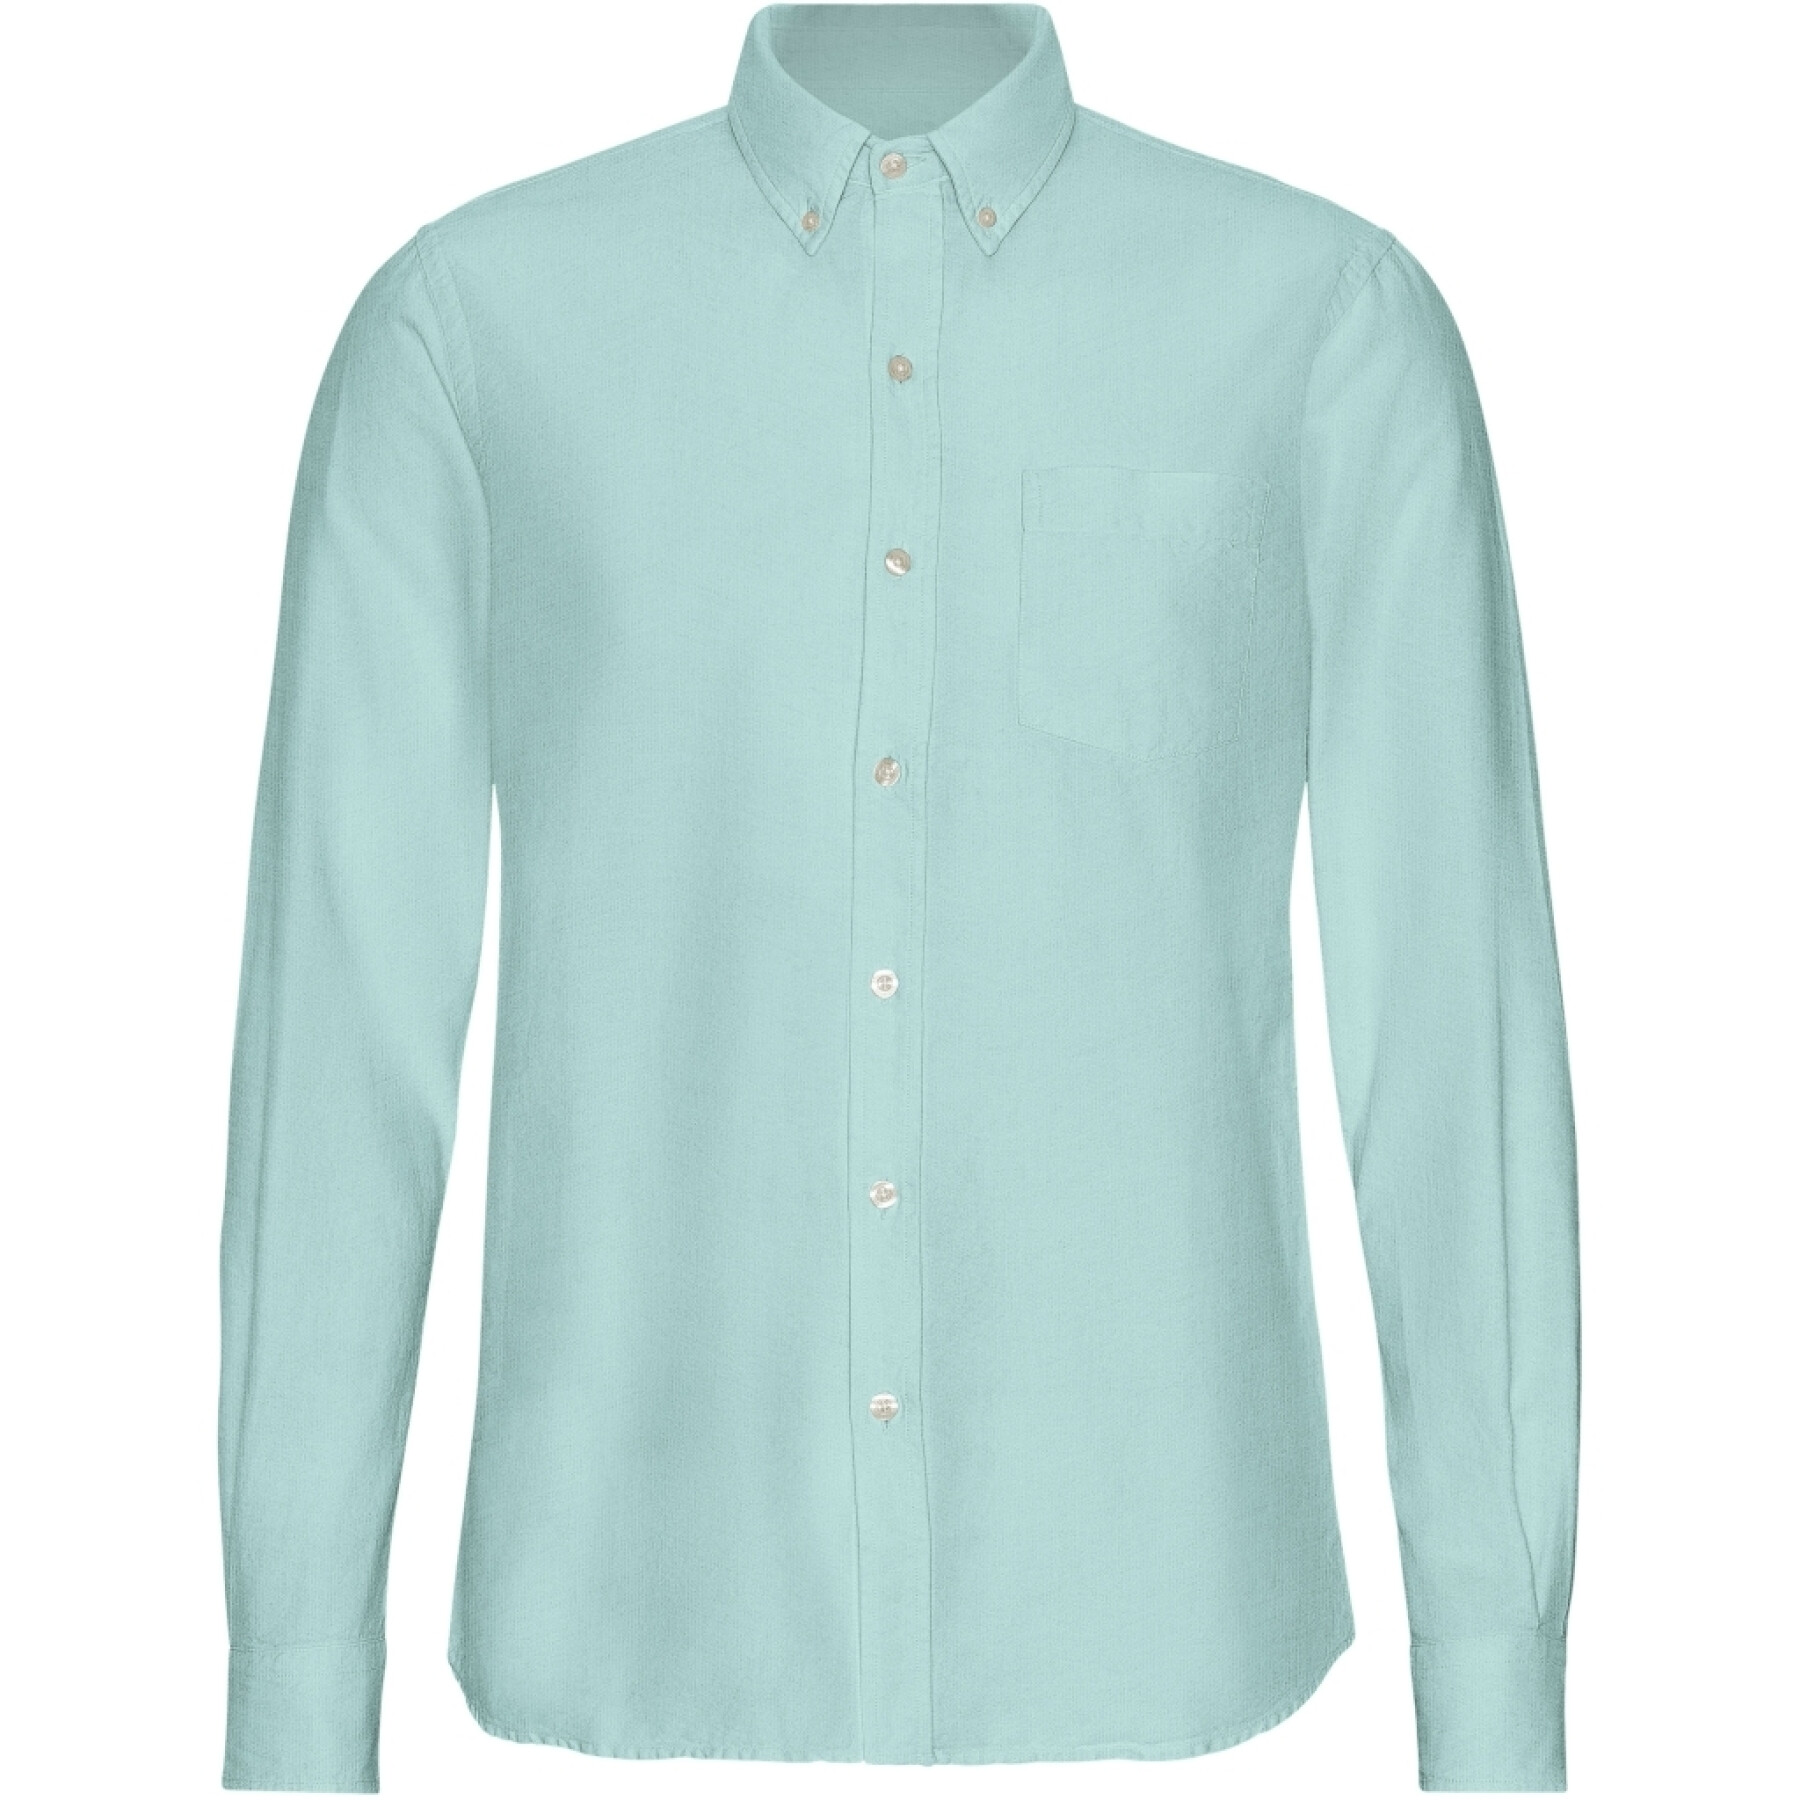 Camisa com botões Colorful Standard Organic Teal Blue